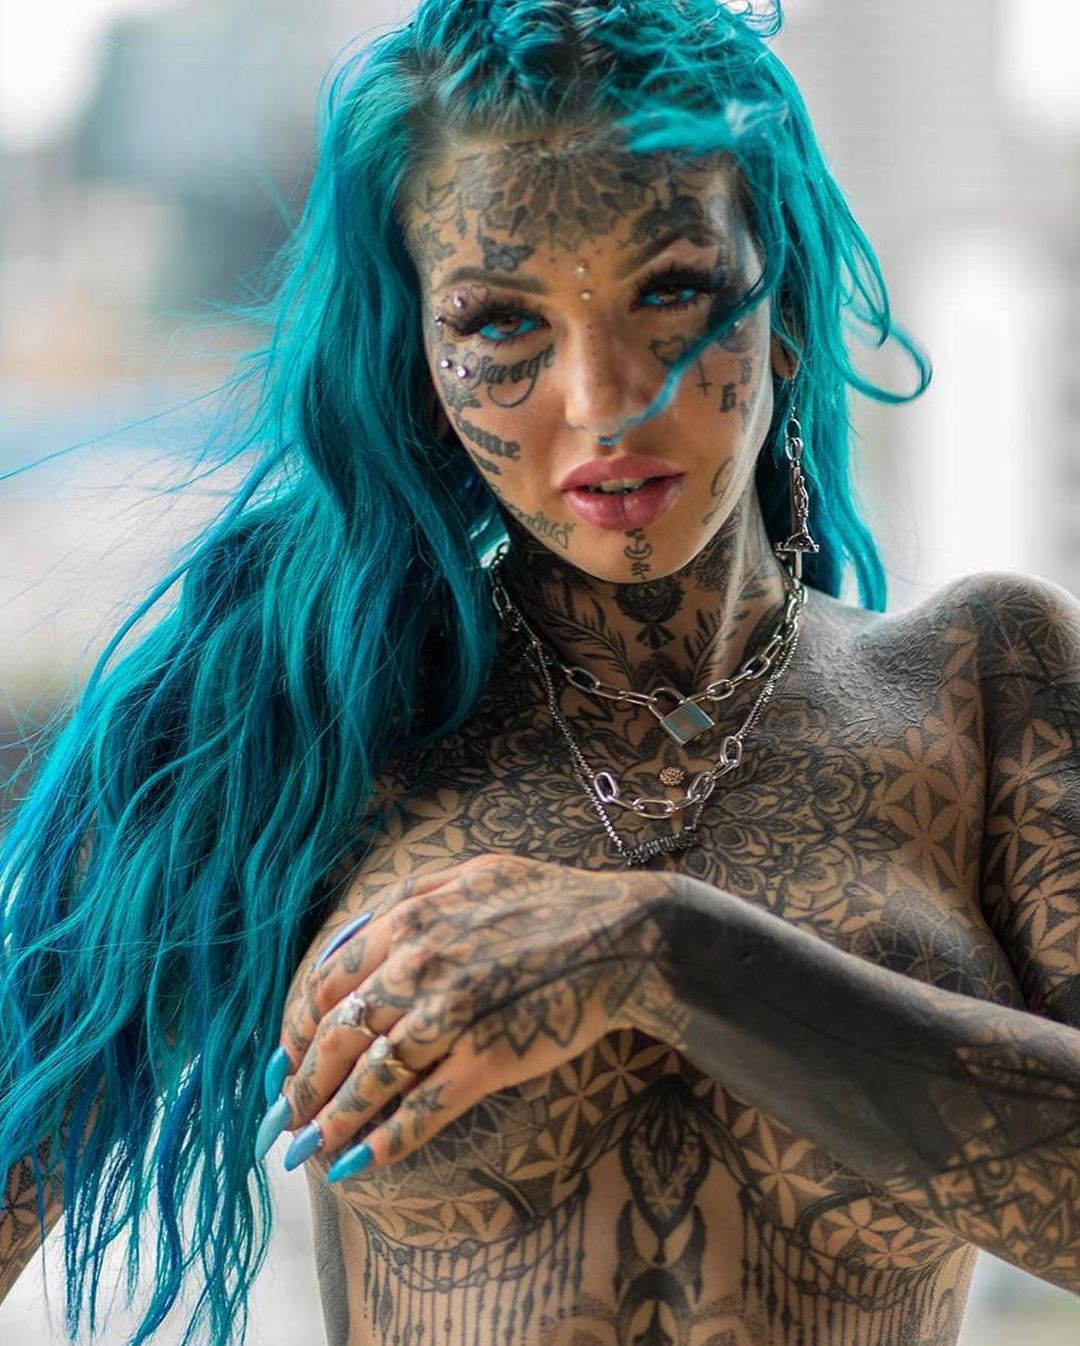 Amber Luke Dövmelerini Gösterdiği İçin Yüz Binlerce Takipçili Instagram Hesabı Silindi - Sayfa 4